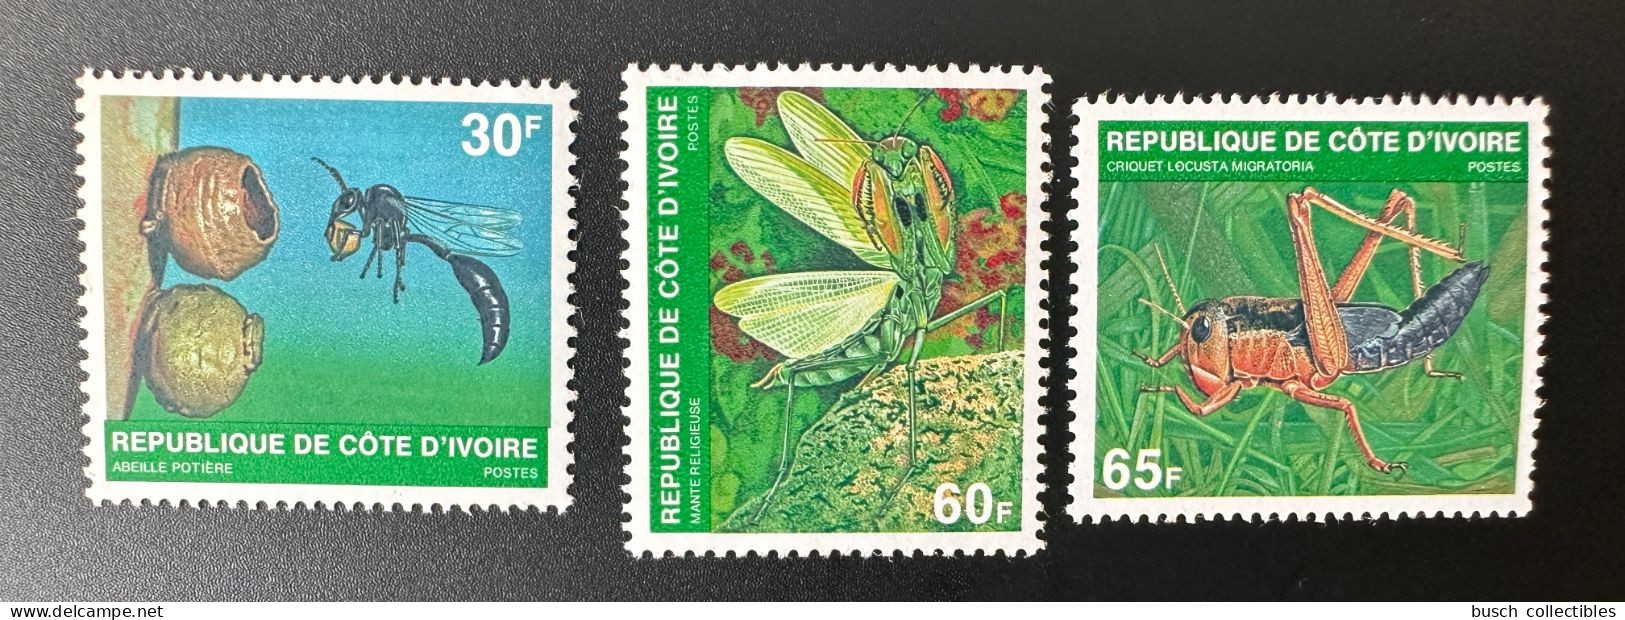 Côte D'Ivoire Ivory Coast 1979 Mi. A - C 611 Insectes Insects Insekten Abeille Potière Bee Biene Mante Religieuse - Côte D'Ivoire (1960-...)